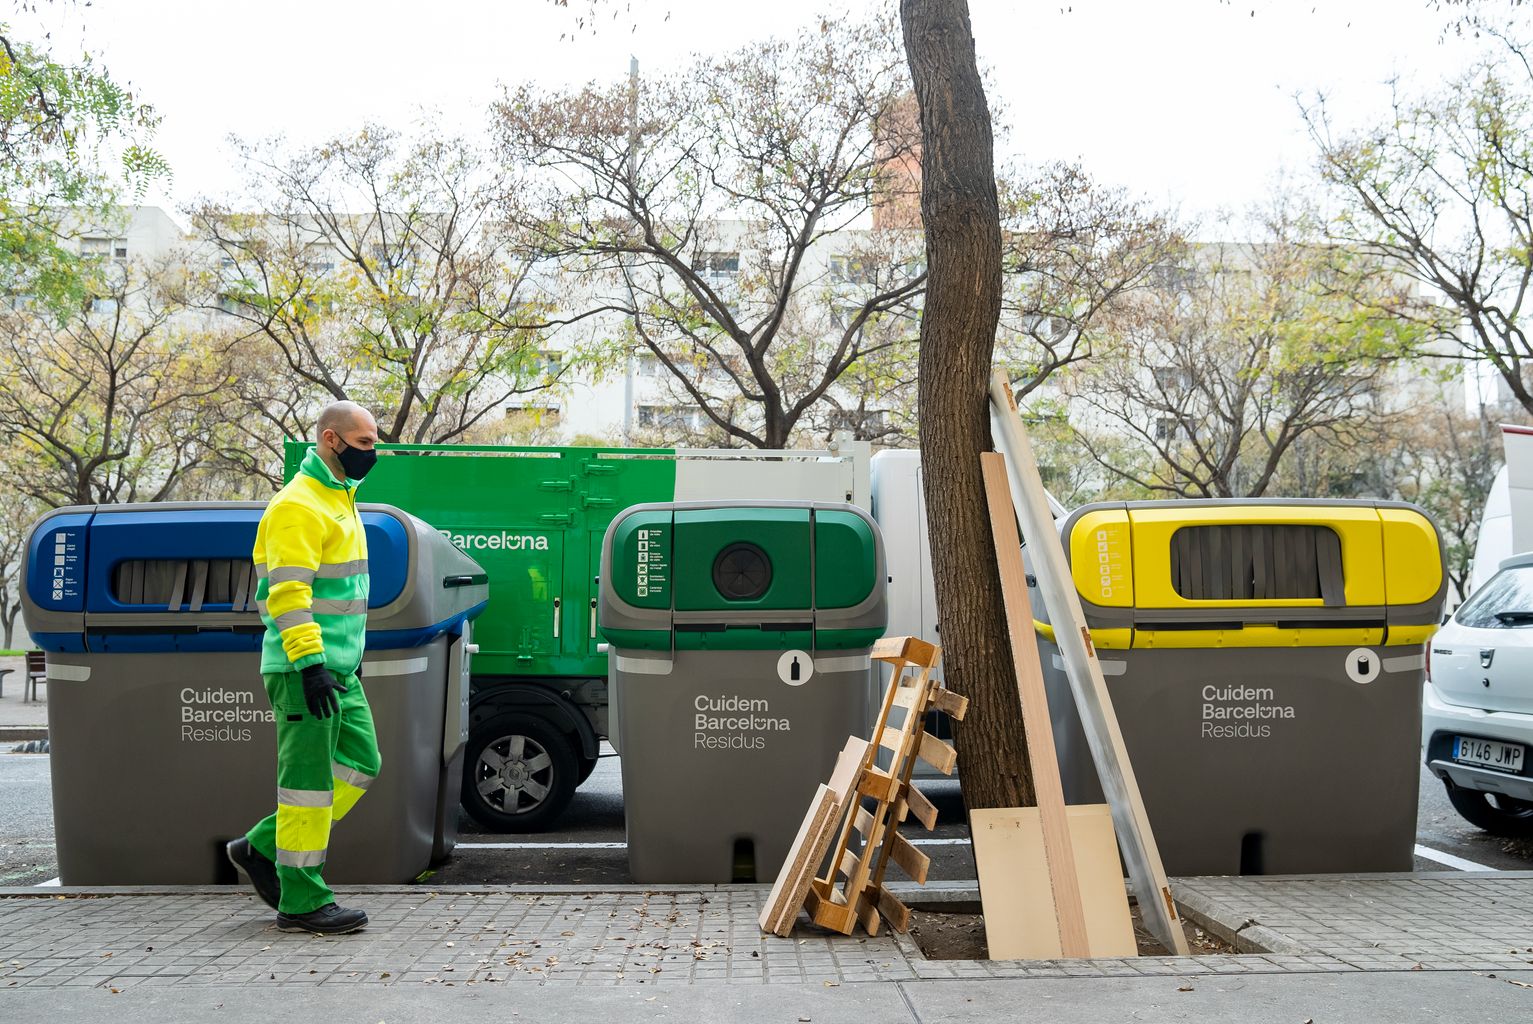 Un treballador del servei de neteja (Cuidem Barcelona Residus) s'apropa per a recollir unes fustes i mobles abandonats a l'escocell d'un arbre al costat d'uns contenidors de reciclatge